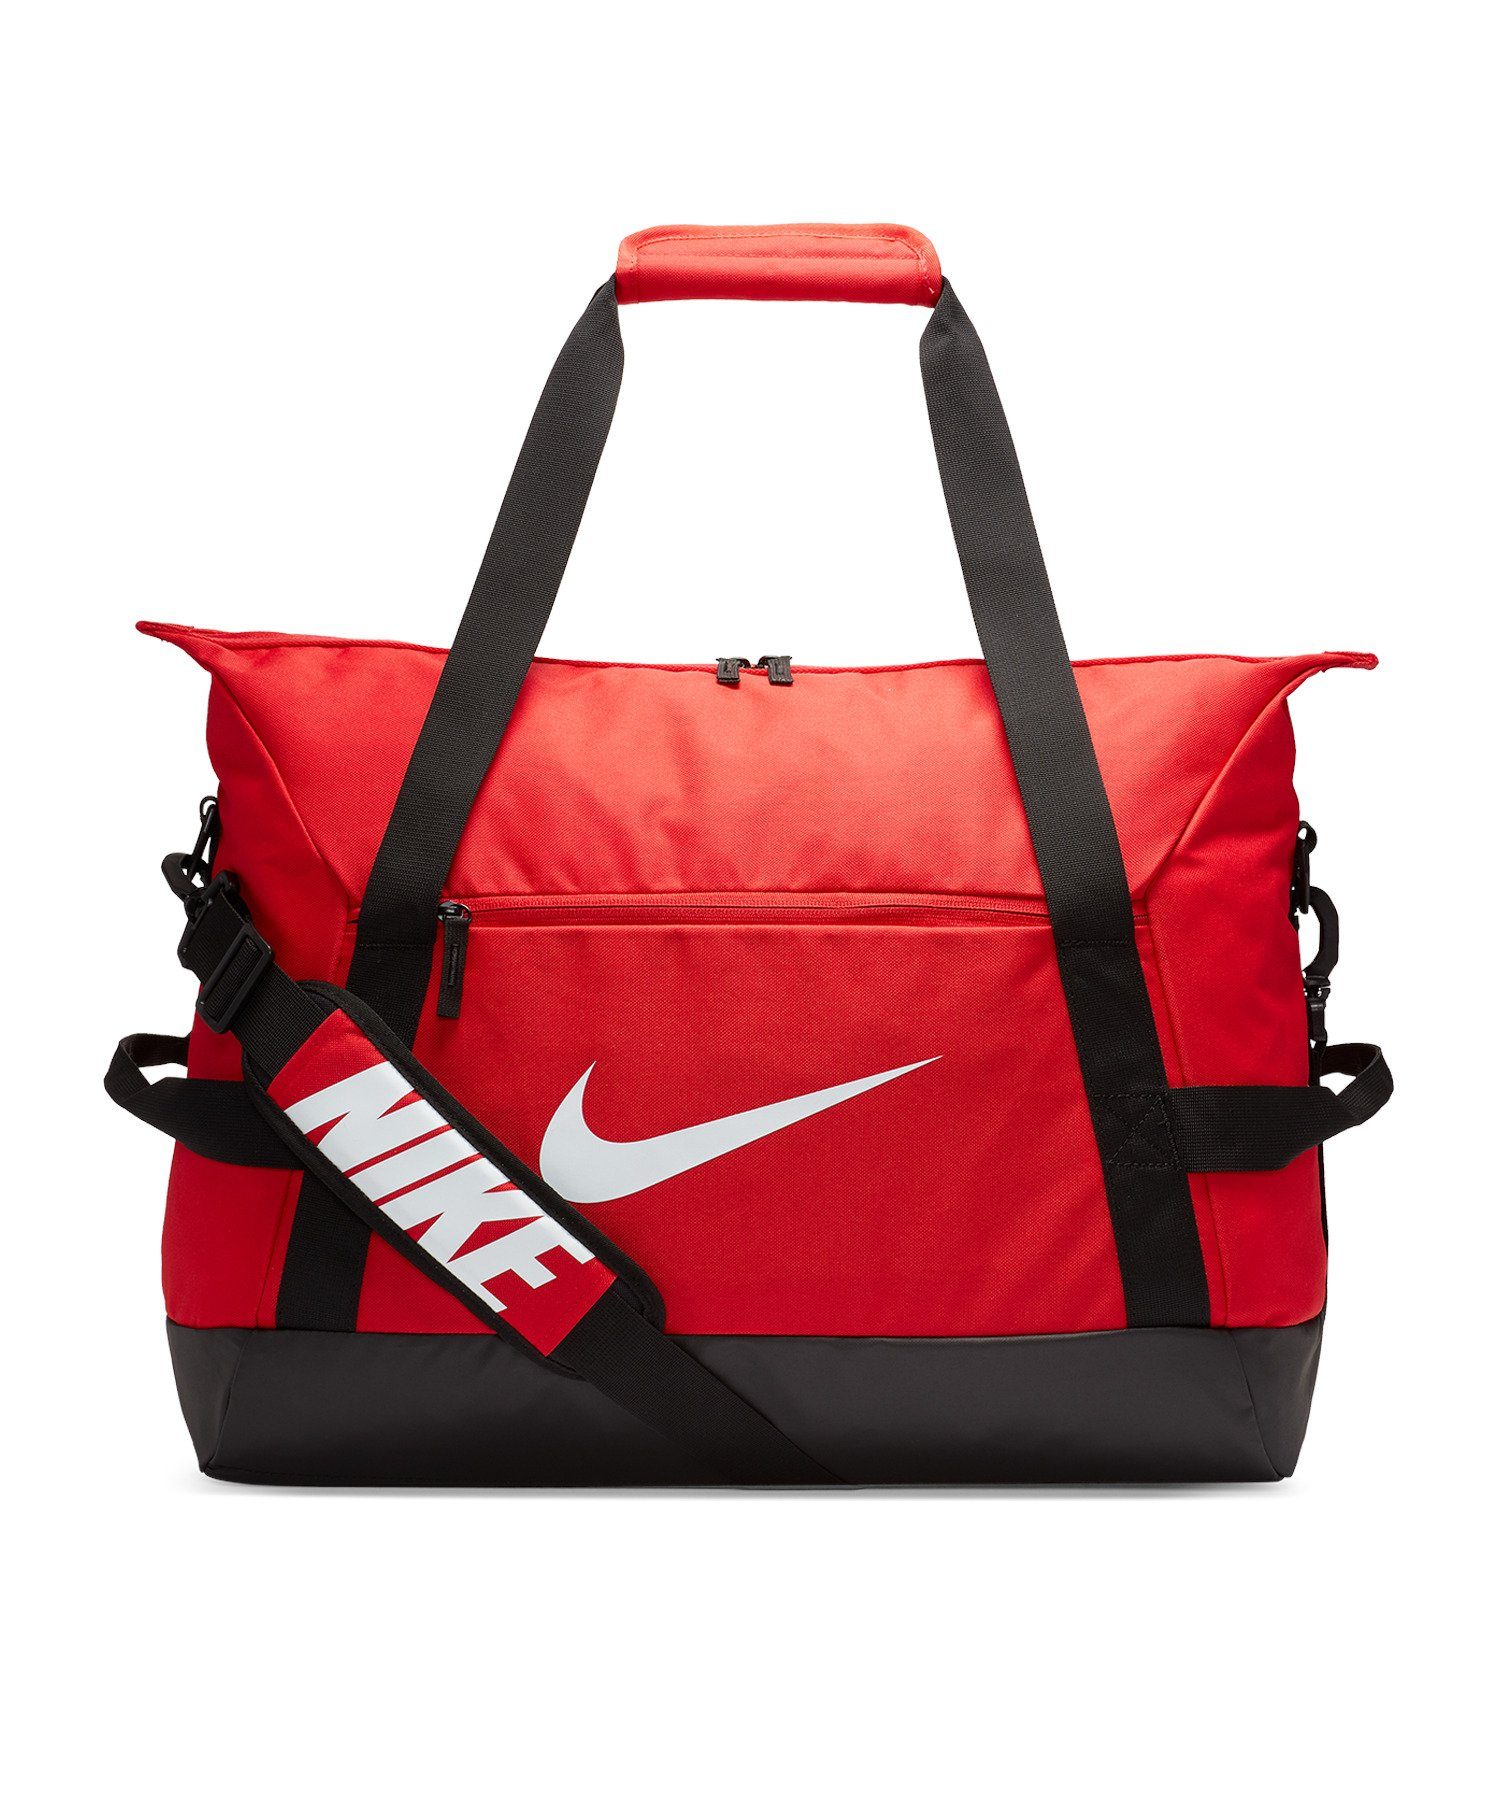 Nike Taschen online kaufen | OTTO